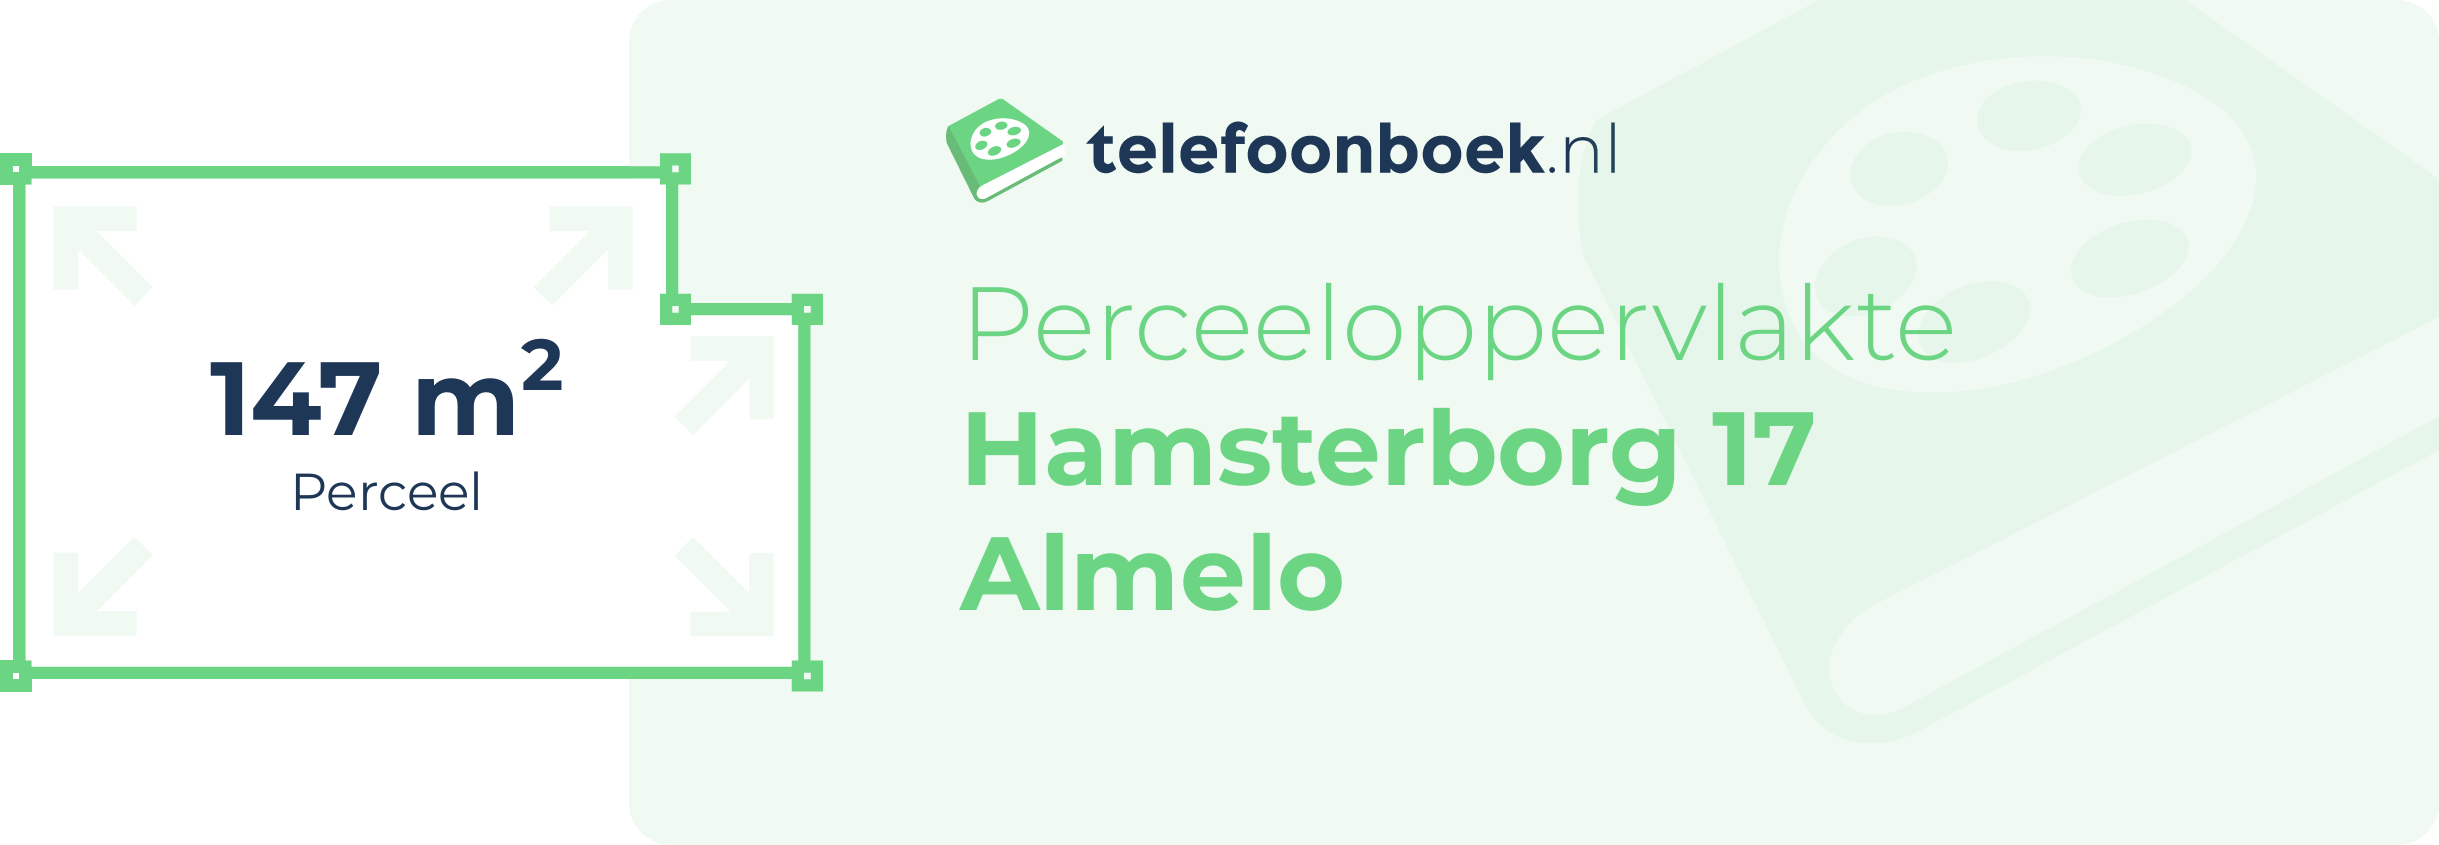 Perceeloppervlakte Hamsterborg 17 Almelo